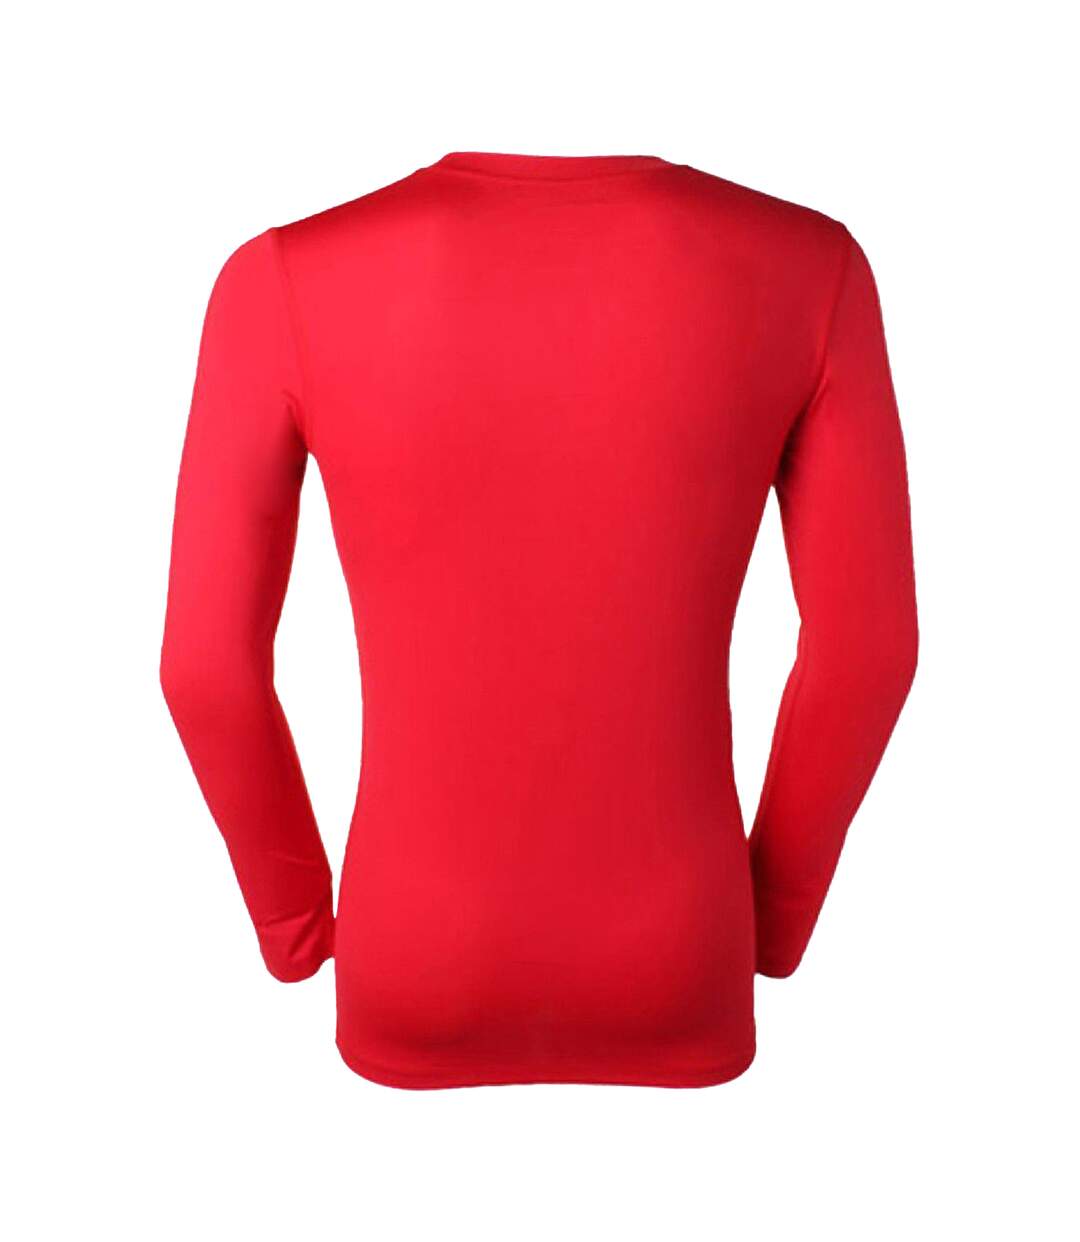 Gamegear® Warmtex - T-shirt thermique à manches longues - Homme (Rouge) - UTBC438